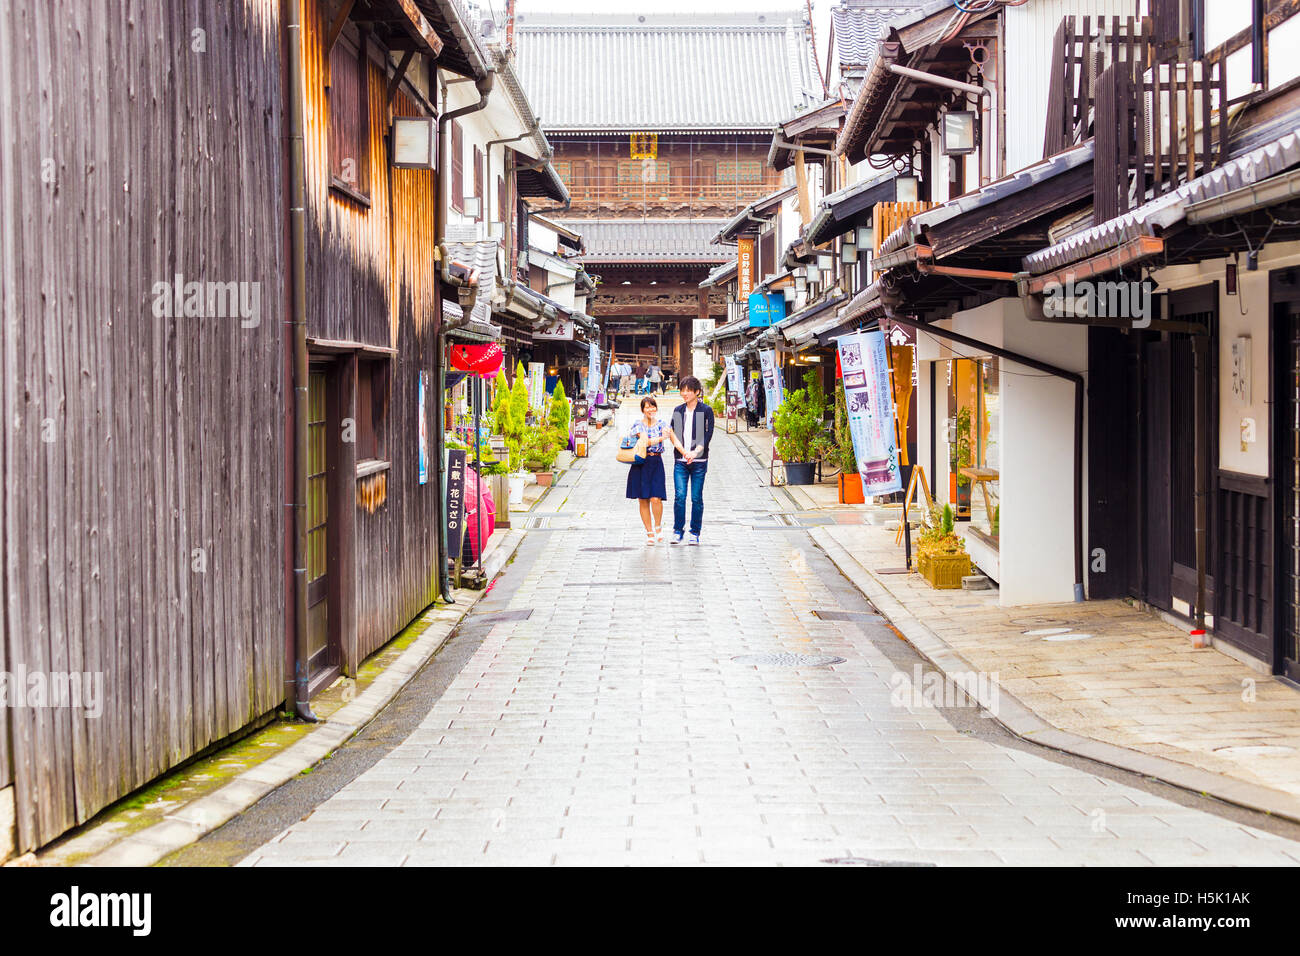 La gente pasea por las calles tradicionales de Nagahama vacío entre tiendas turísticas en frente de Daitsu-ji templo budista, Japón. Horizo Foto de stock